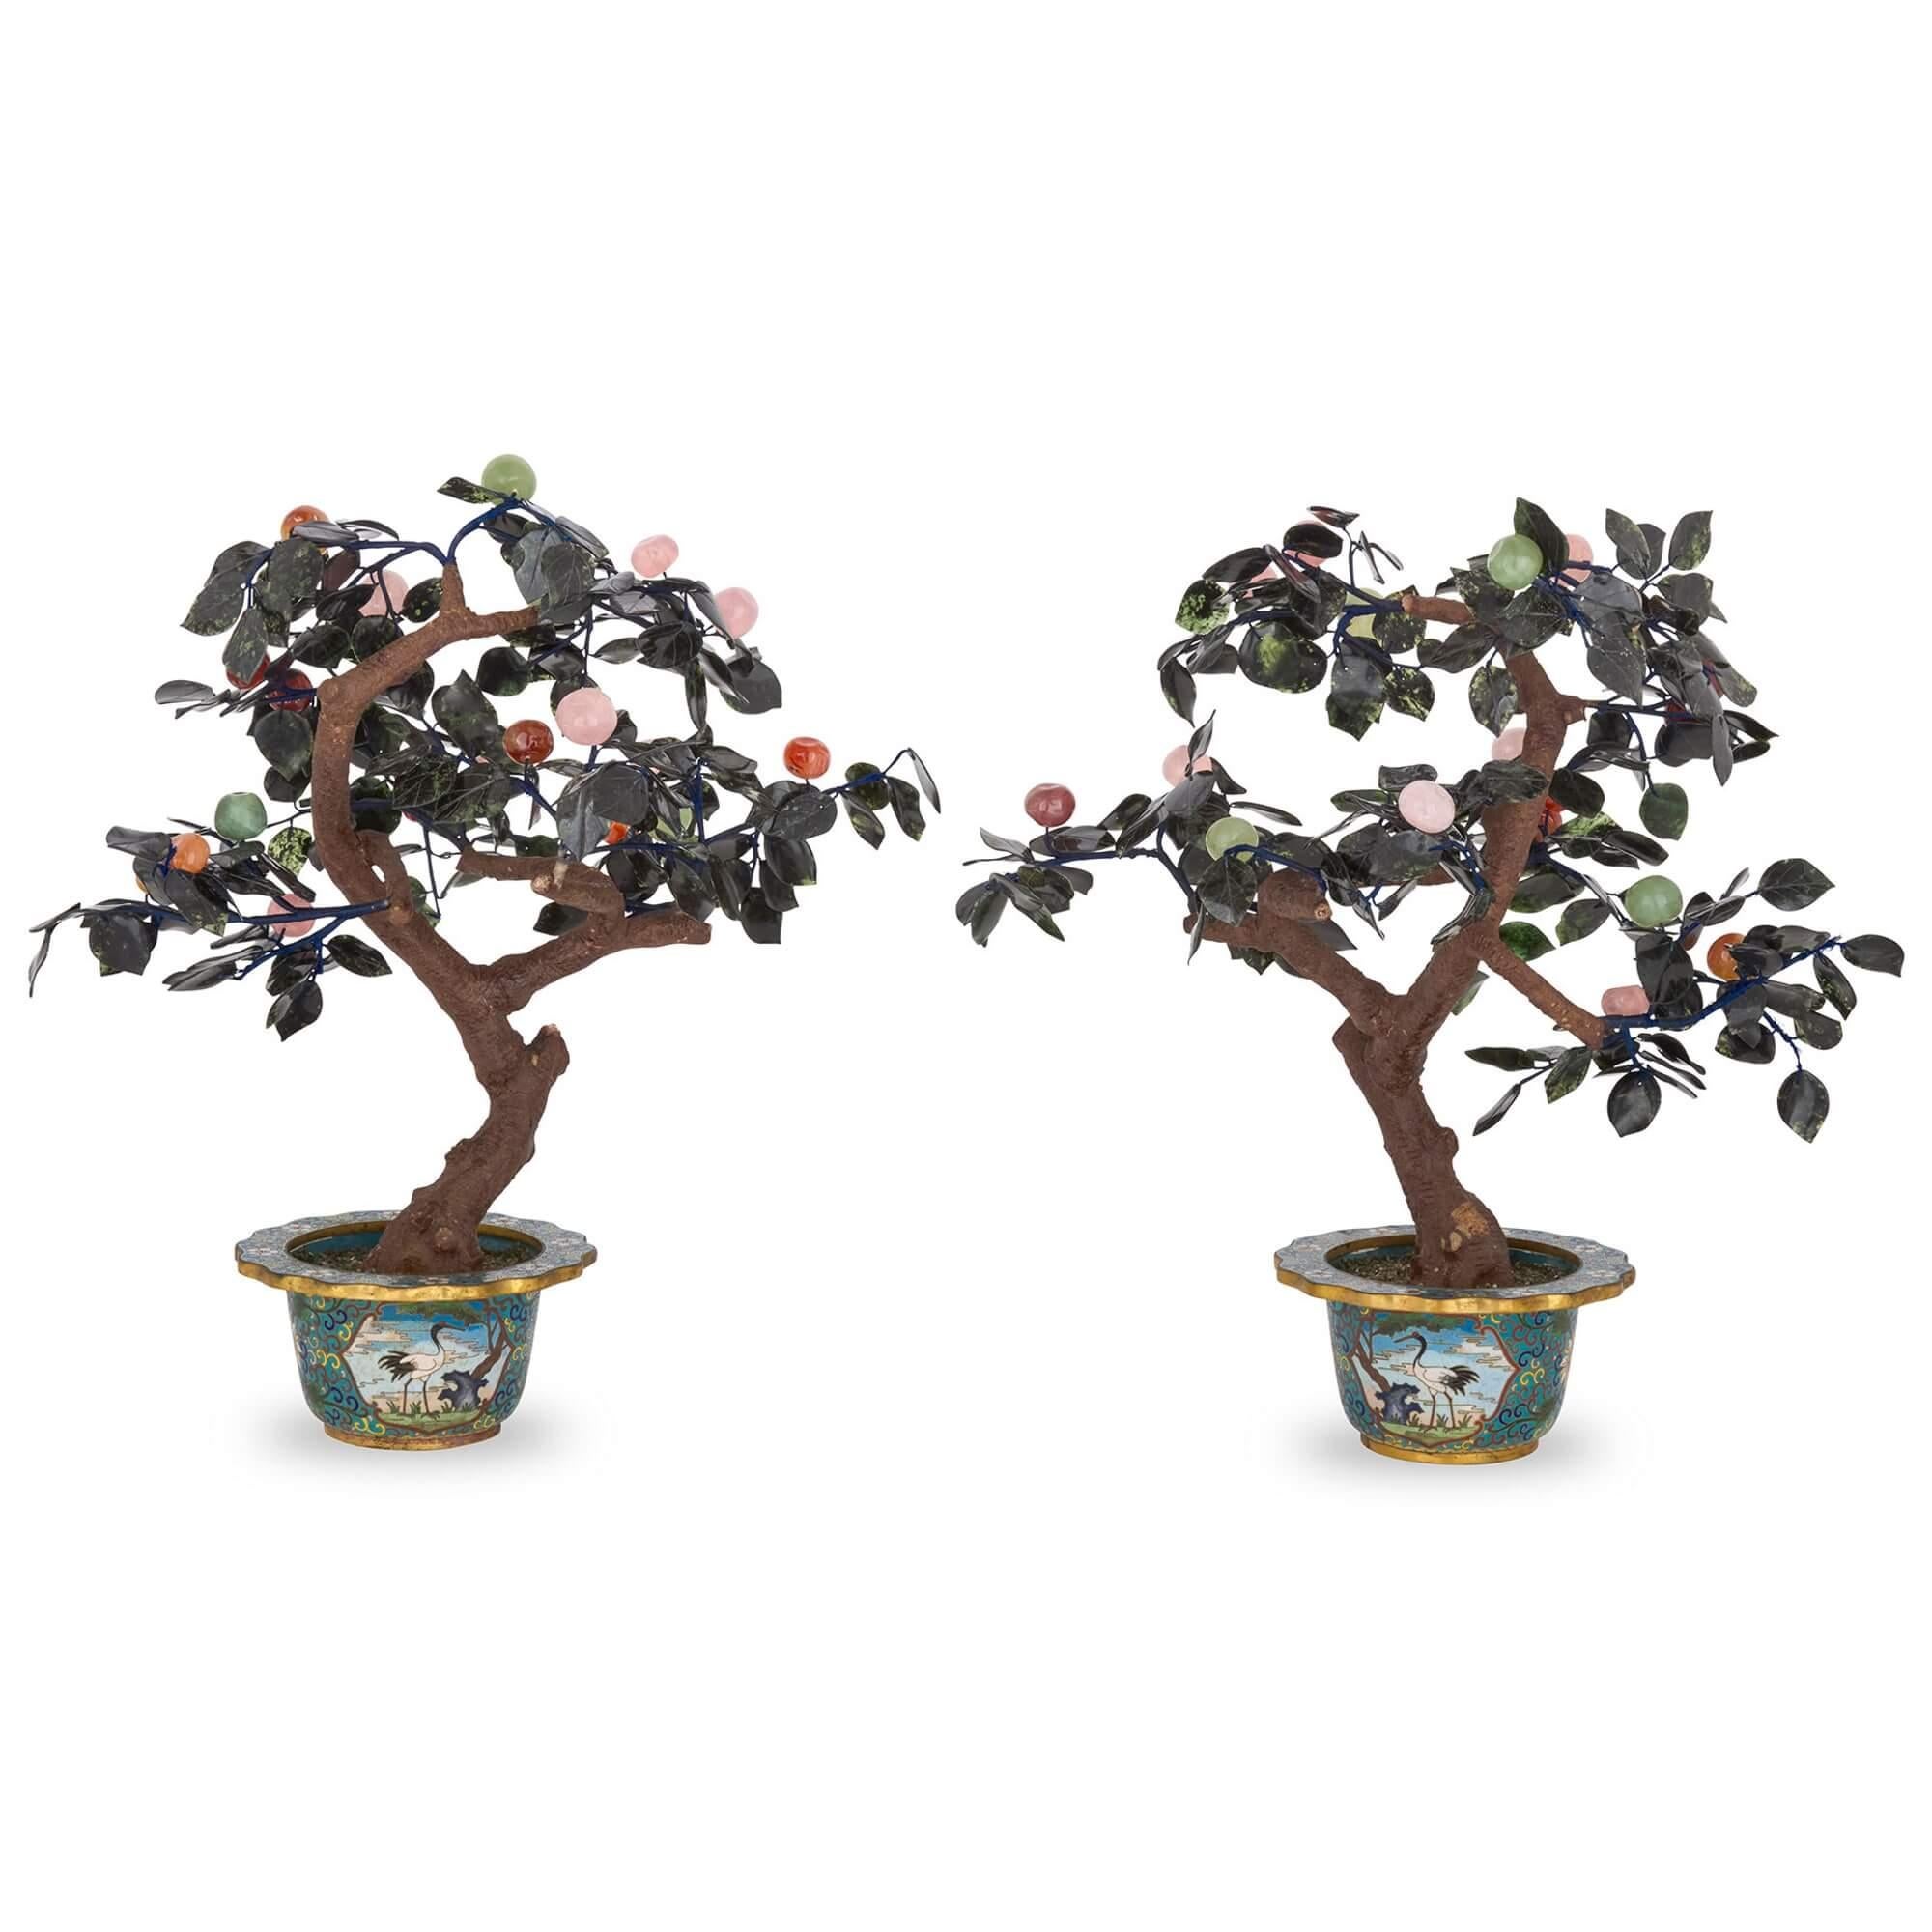 Paar chinesische Blumenmodelle aus Hartstein und Cloisonné-Email
Chinesisch, 20. Jahrhundert 
Höhe 52cm, Breite 46cm, Tiefe 36cm

Diese beiden prächtigen Blumenmodelle sind fast identisch im Design. Sie bestehen jeweils aus einem mit